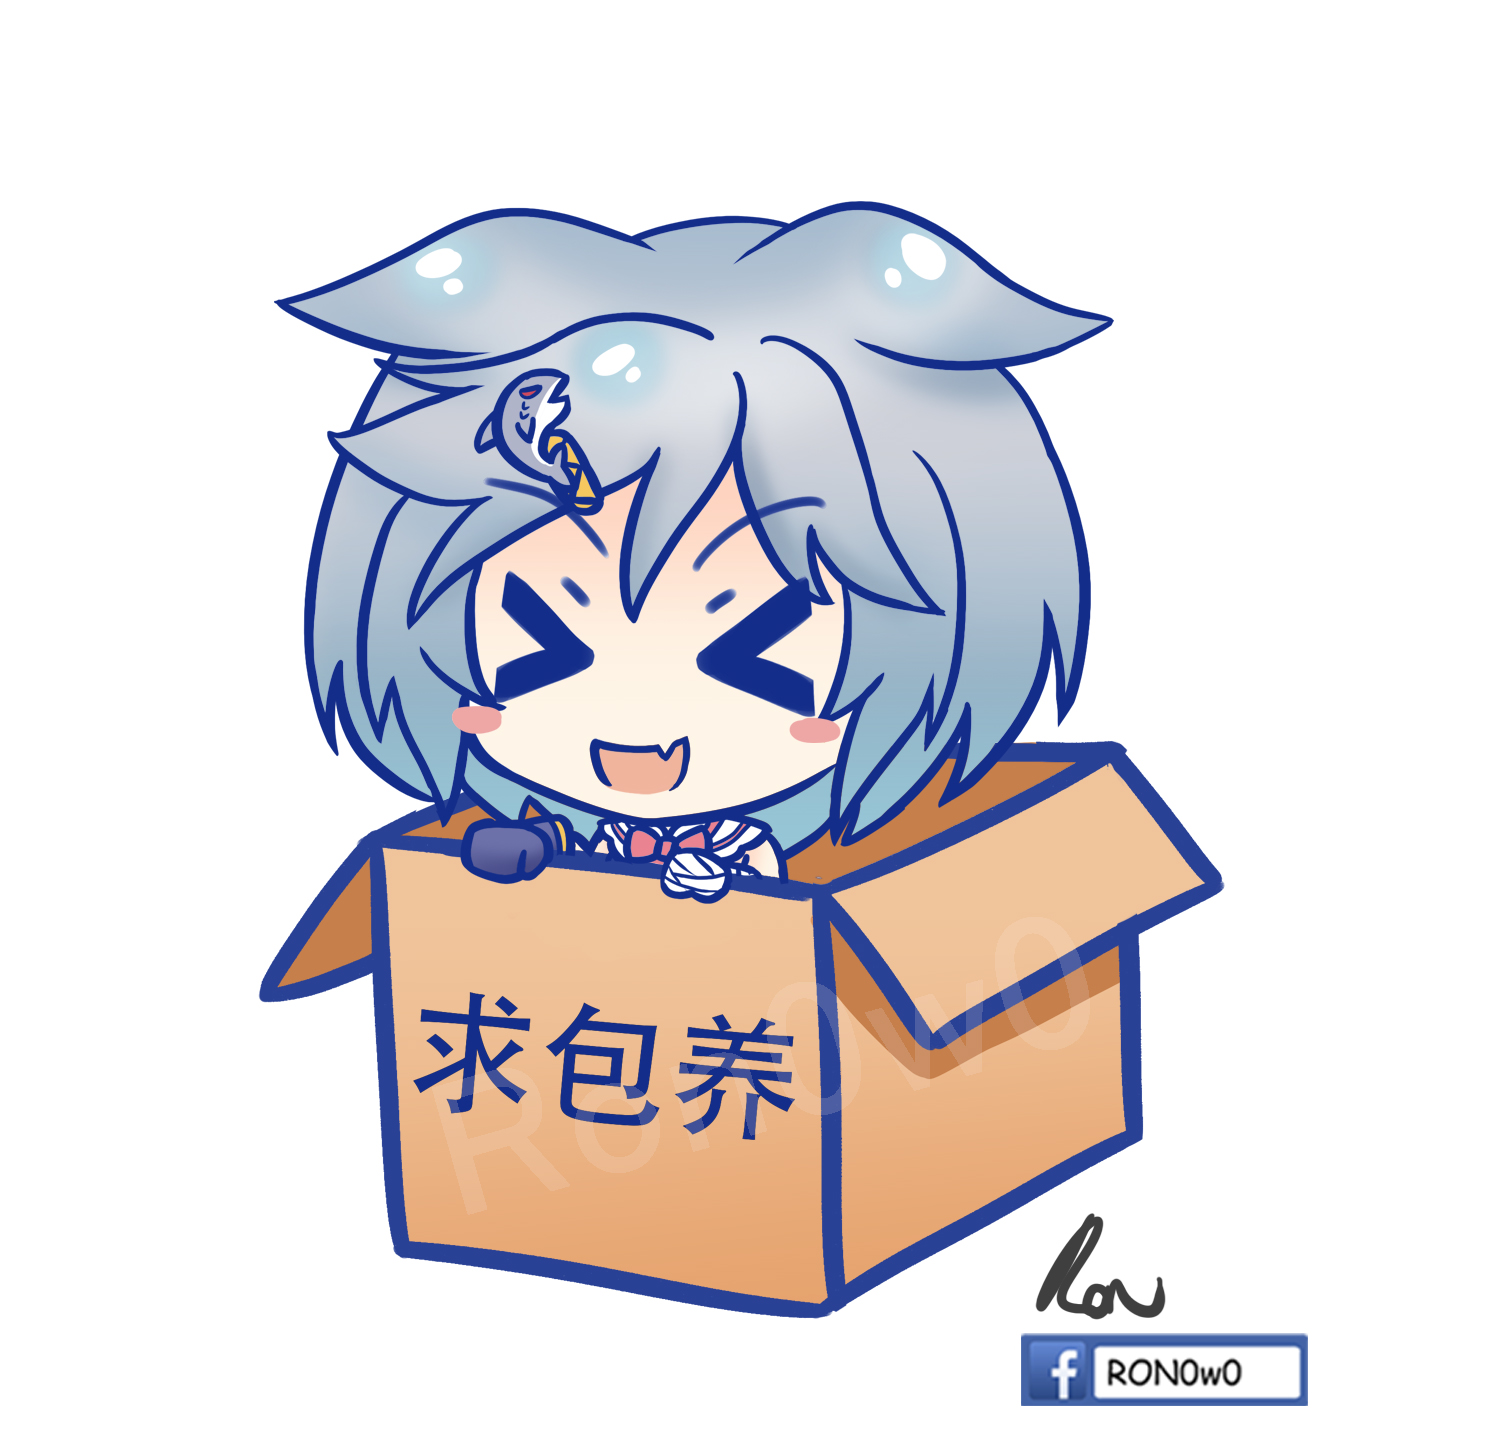 小鲨酱 in box-赤壁inbox